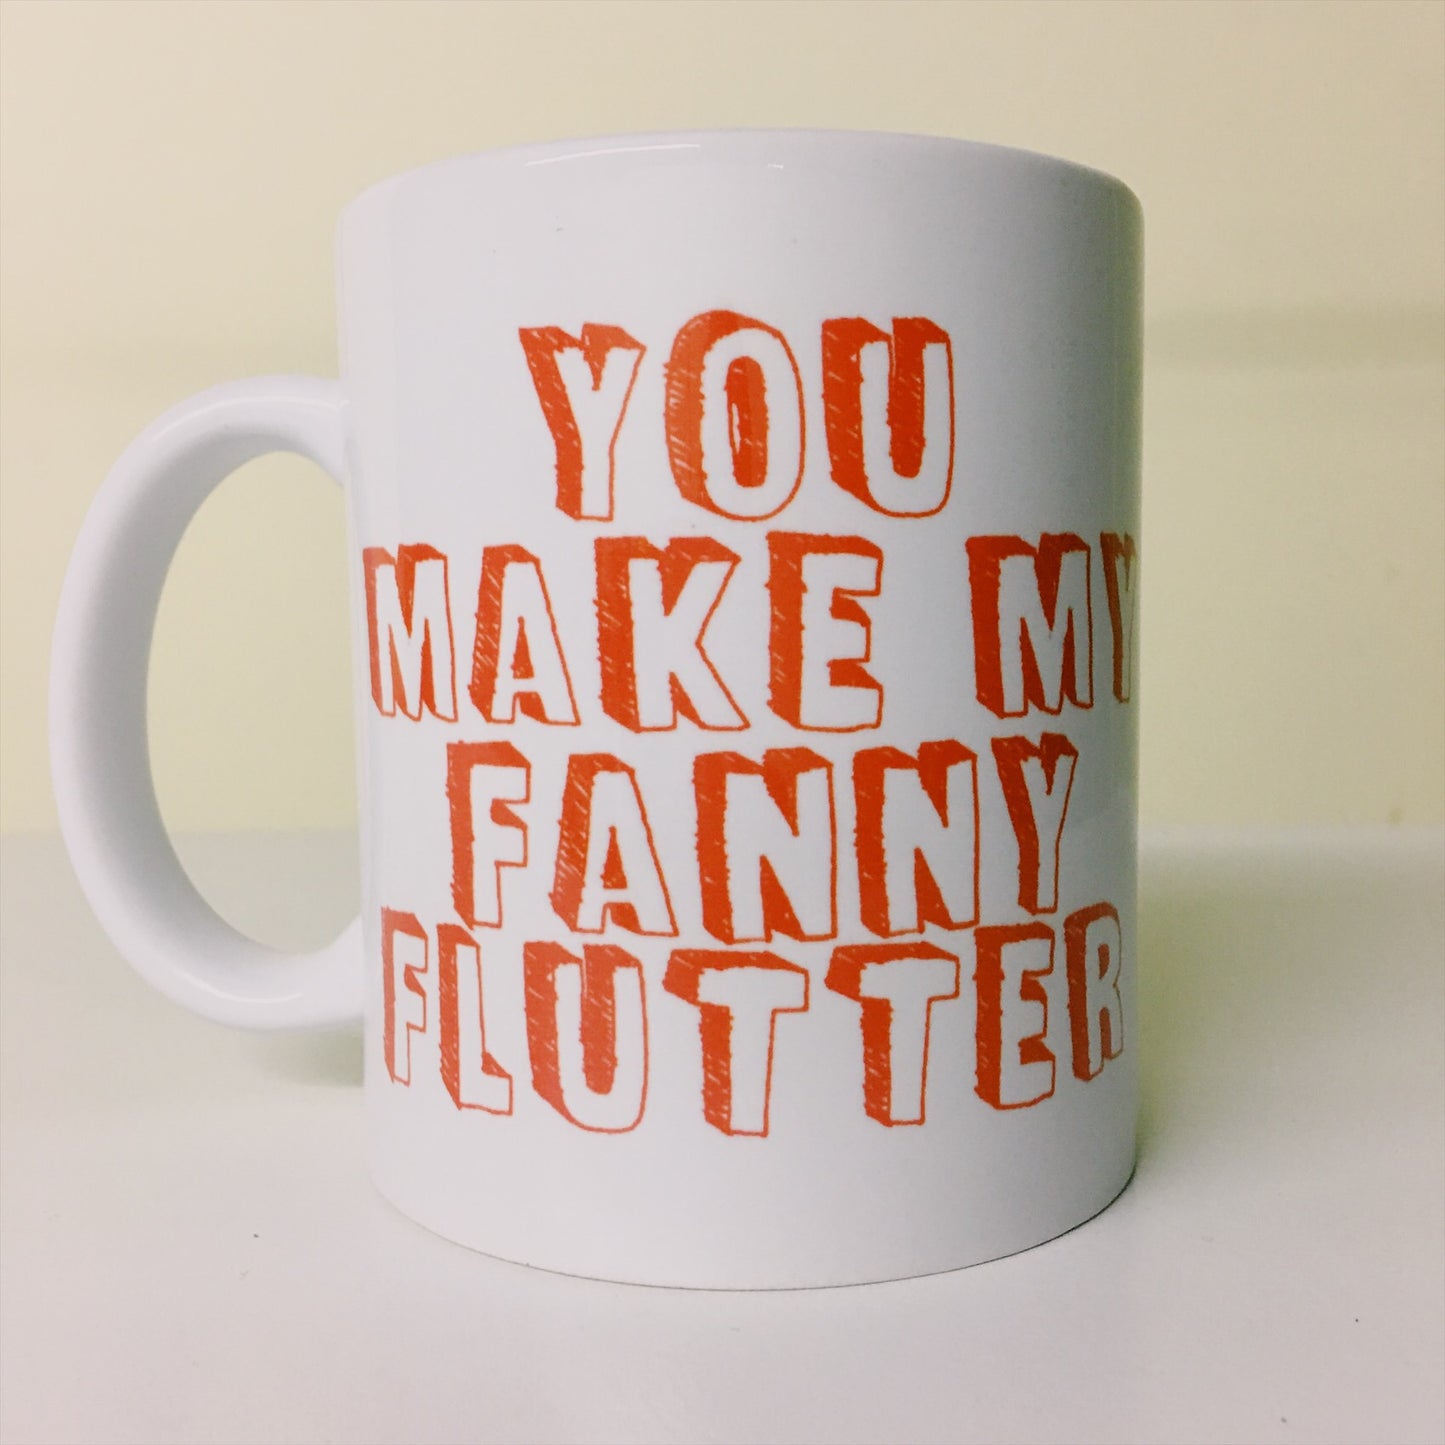 Fanny flutter mug